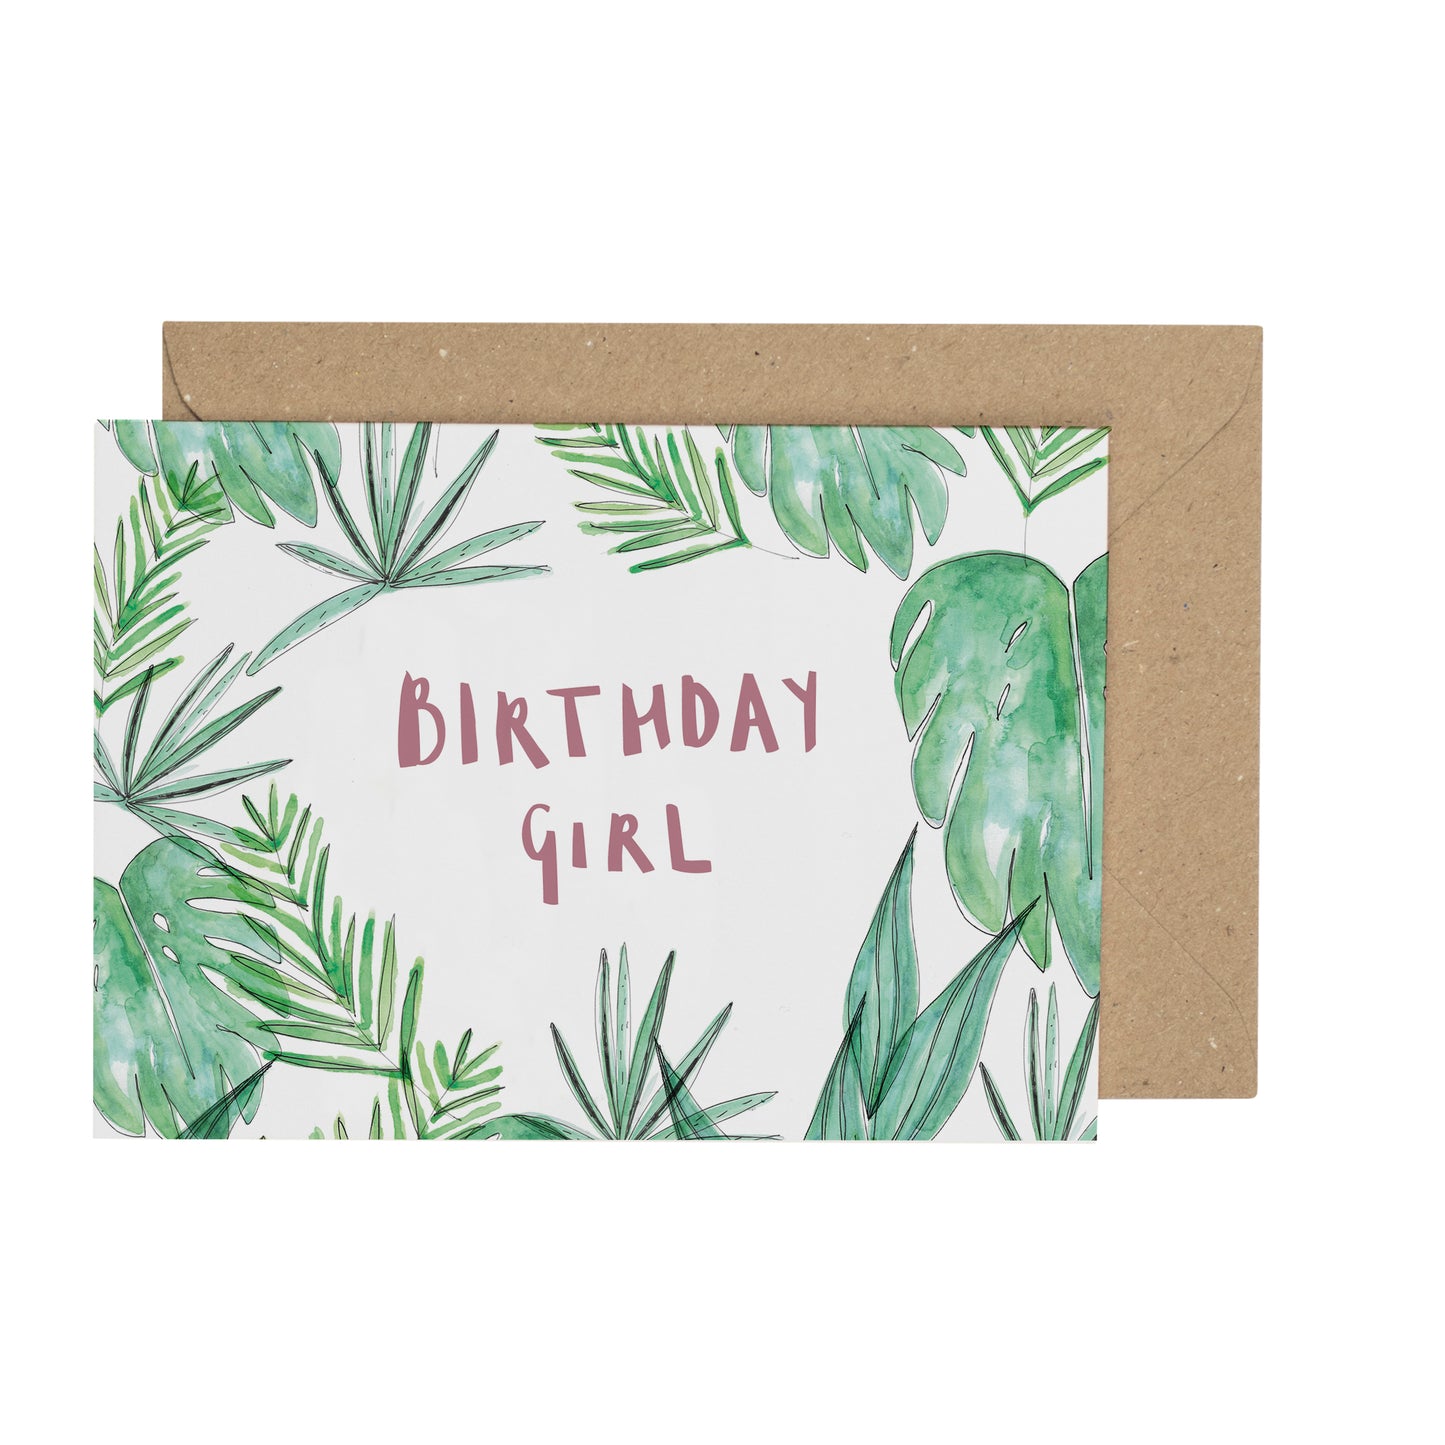 Birthday Girl birthday card